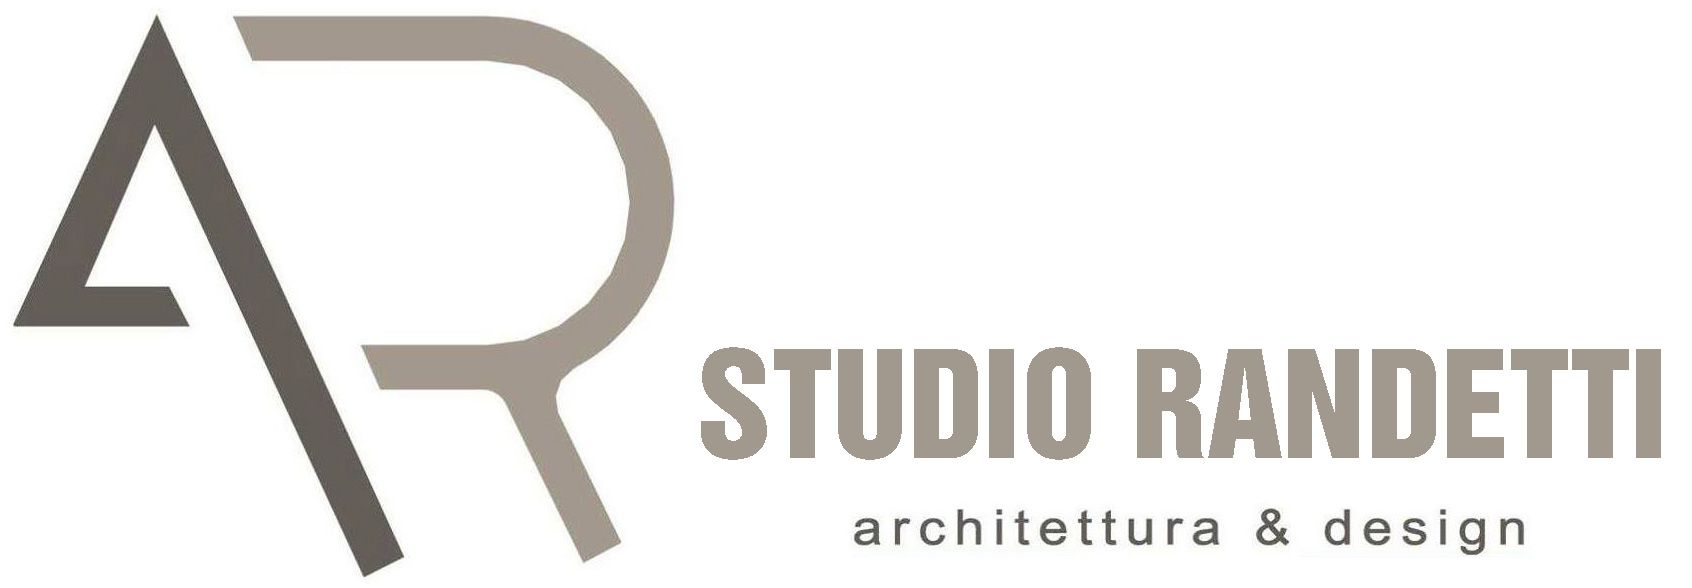 studio randetti logo